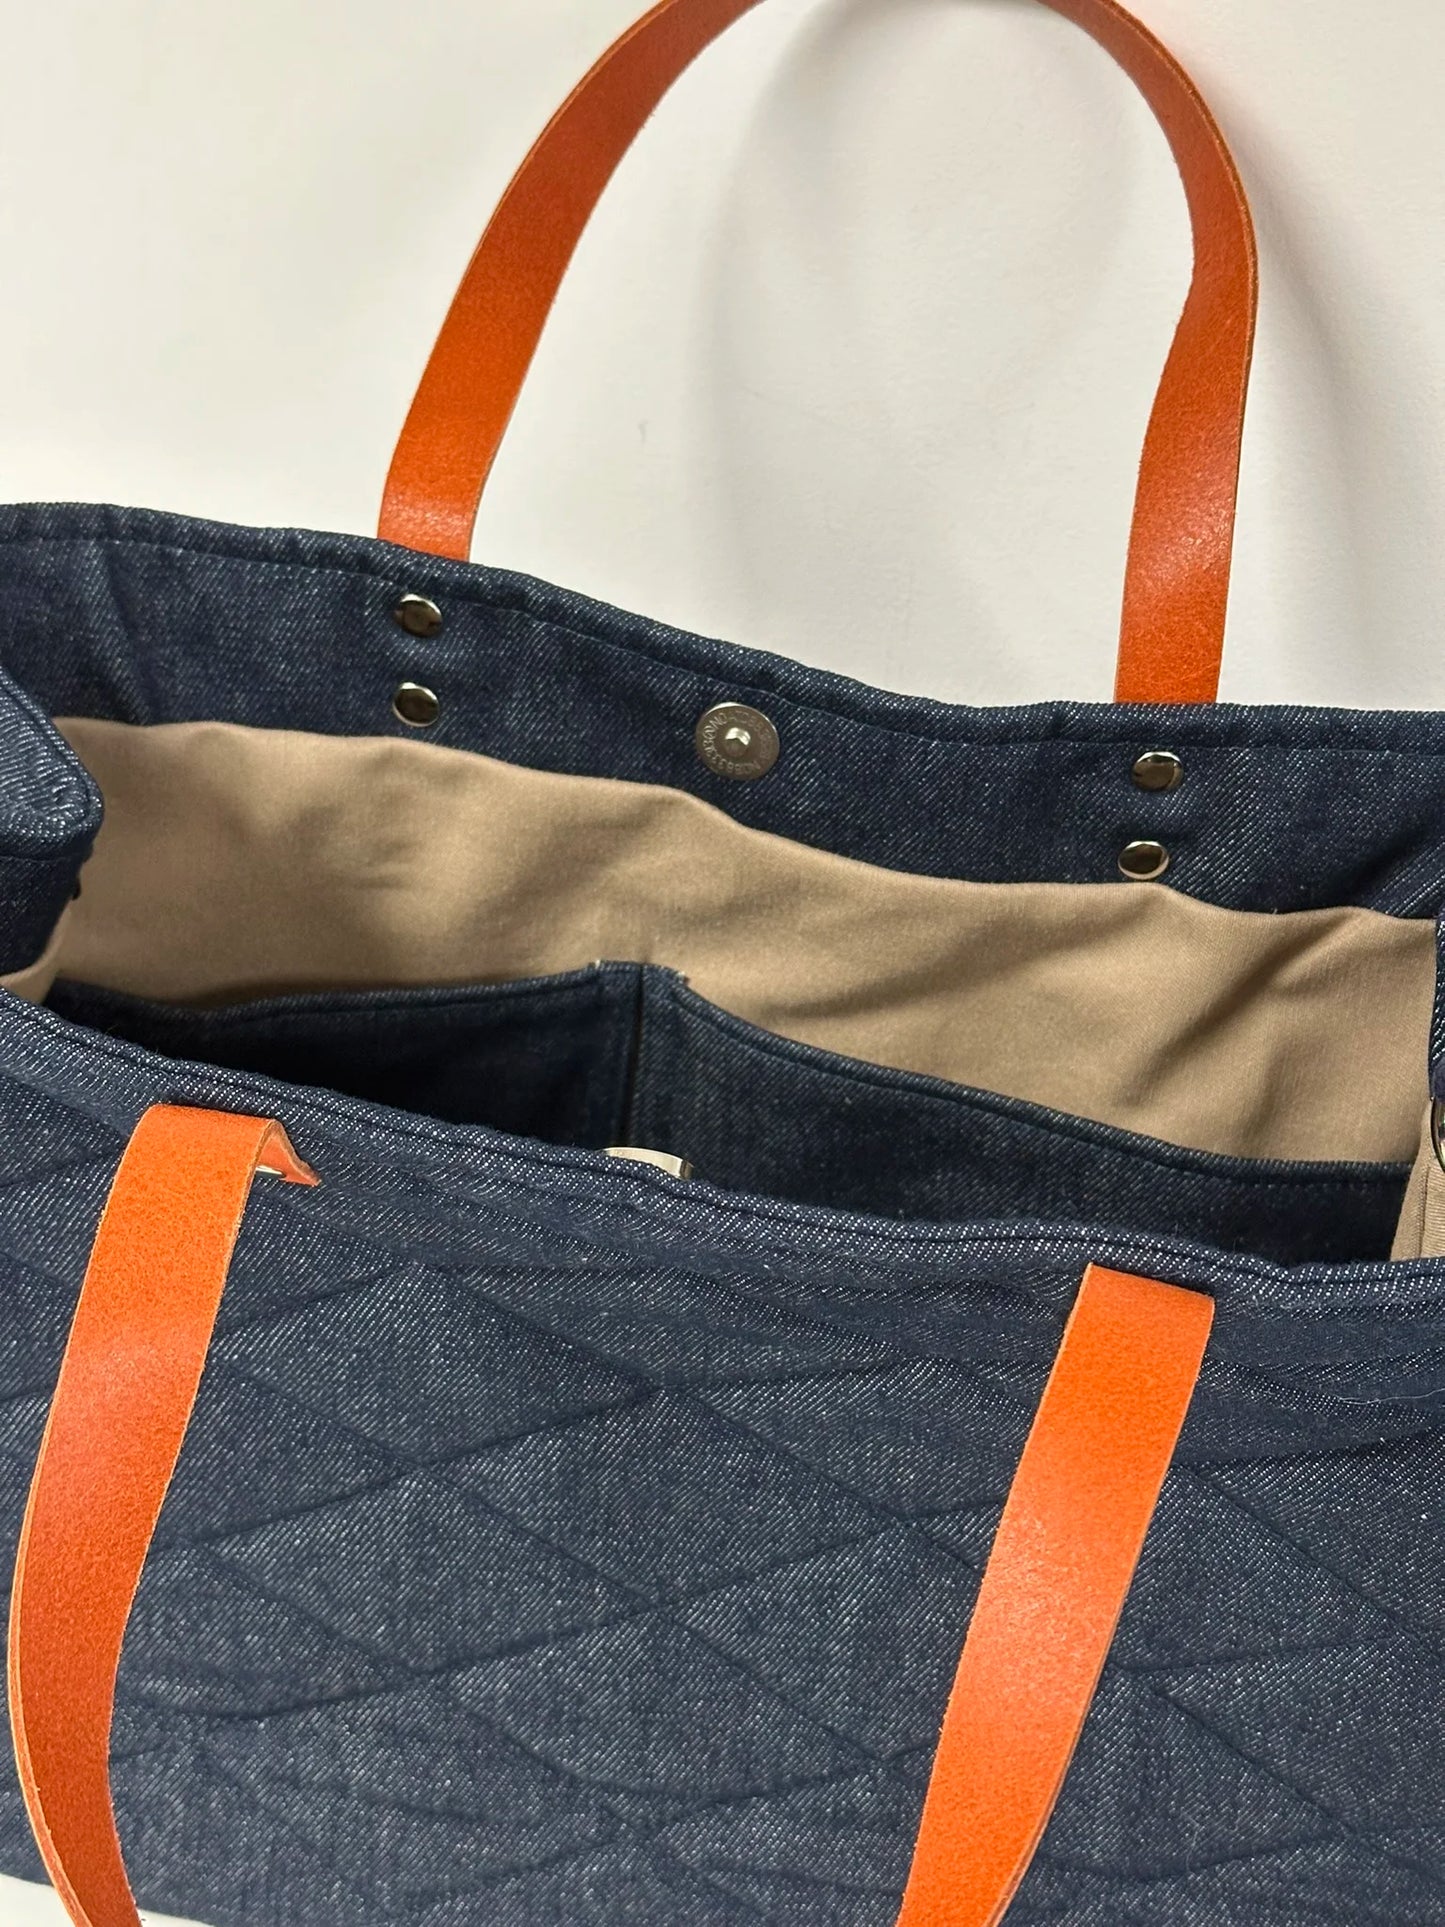 Les deux poches plaquées intérieures du sac Shopper en denim et cuir orange.